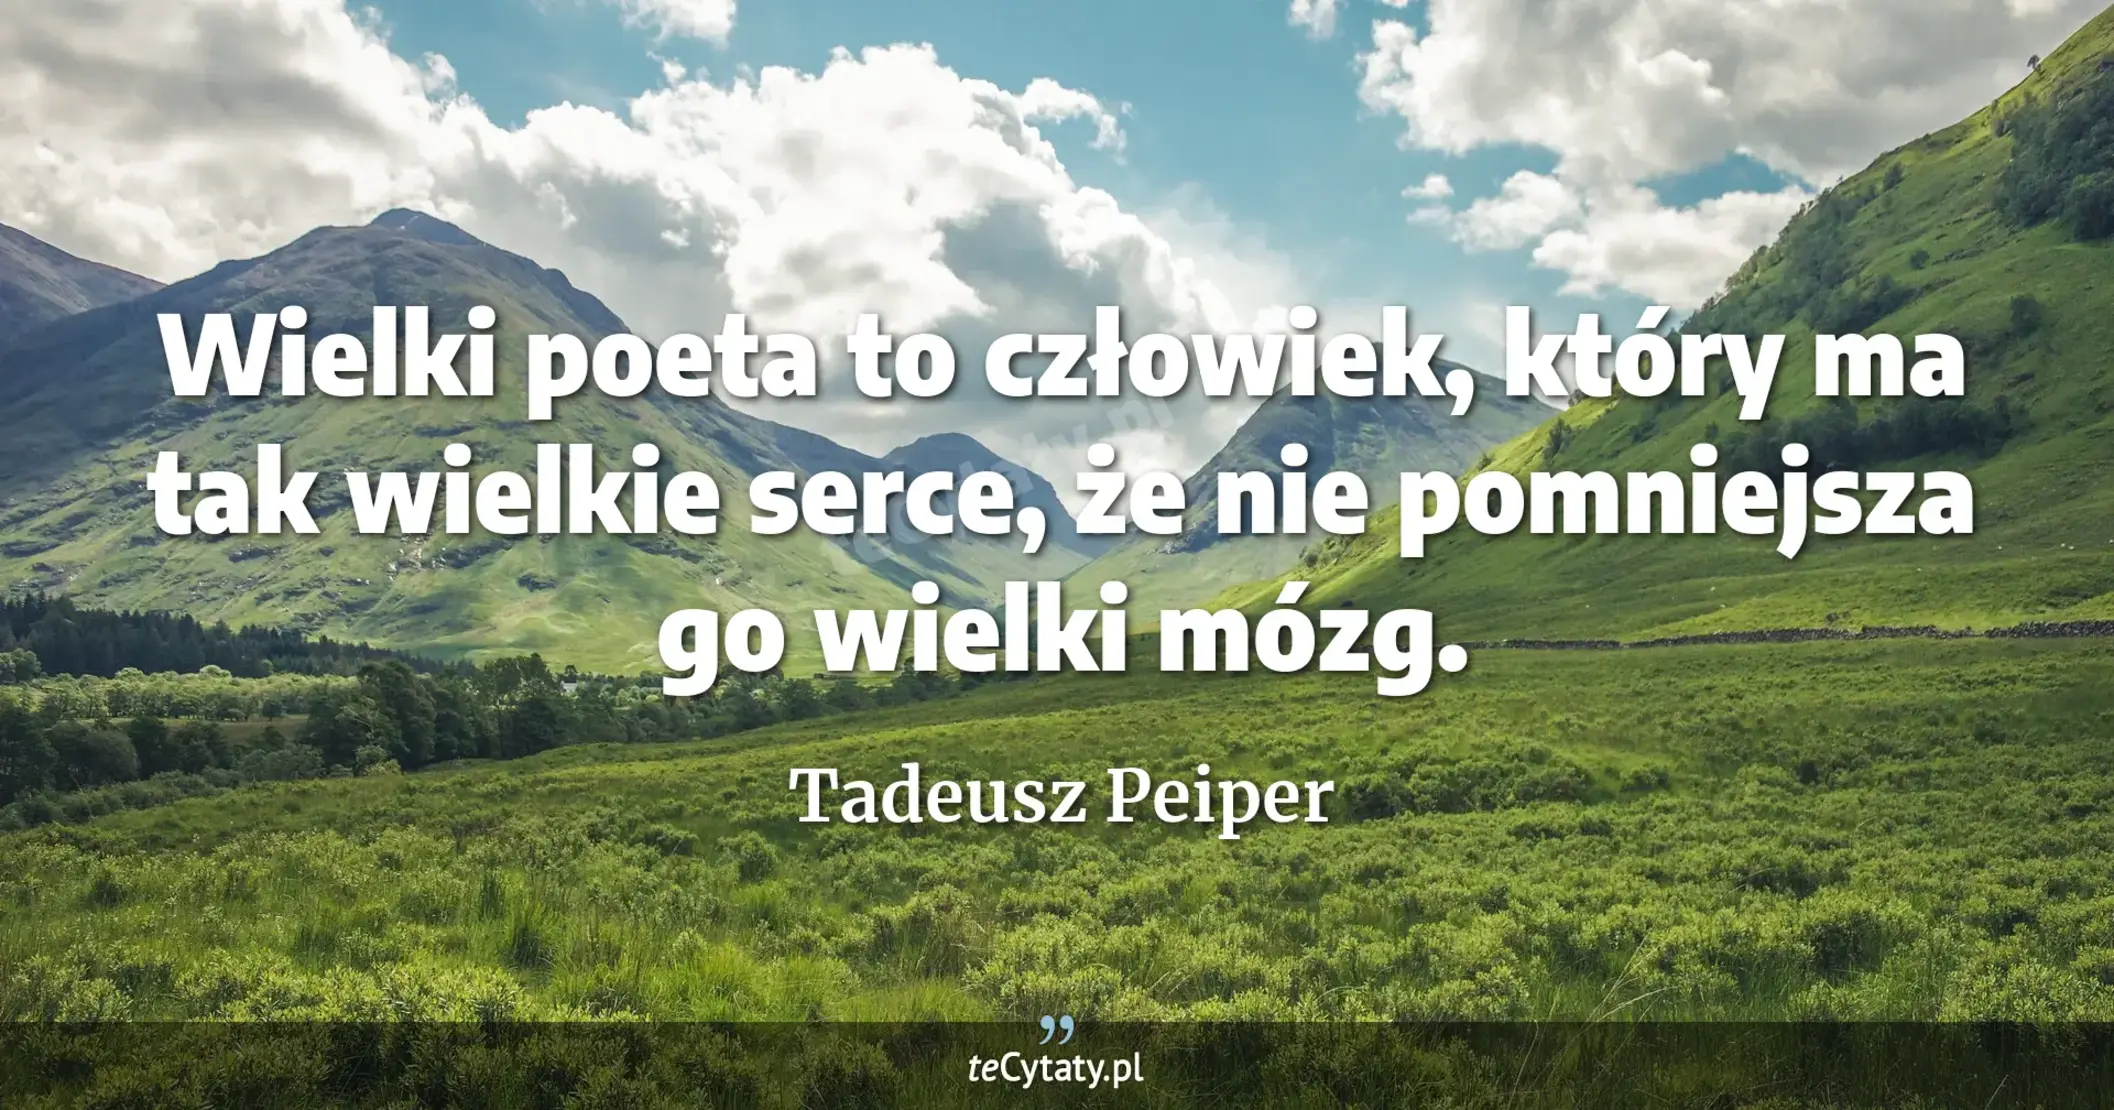 Wielki poeta to człowiek, który ma tak wielkie serce, że nie pomniejsza go wielki mózg. - Tadeusz Peiper